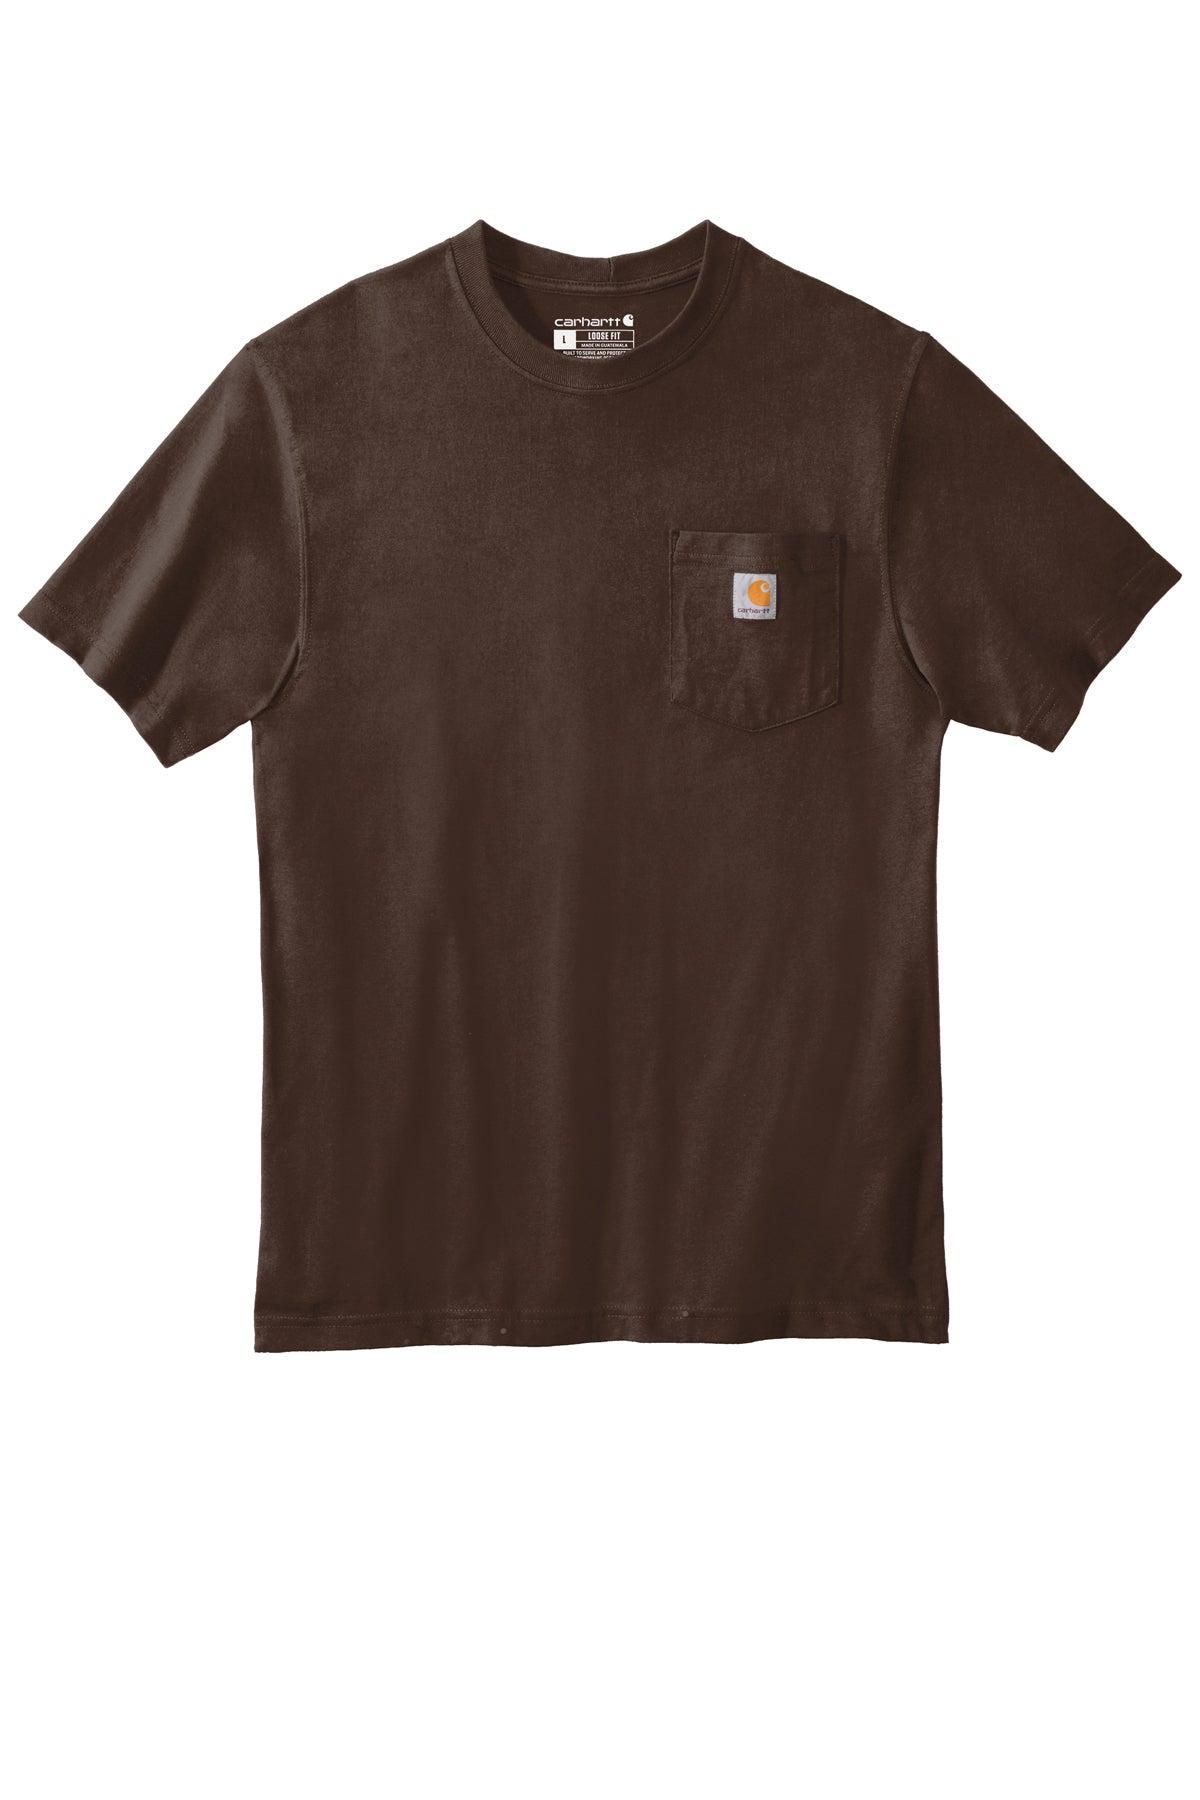 CTTK87 Carhartt ® Tall Workwear Pocket Short Sleeve T-Shirt